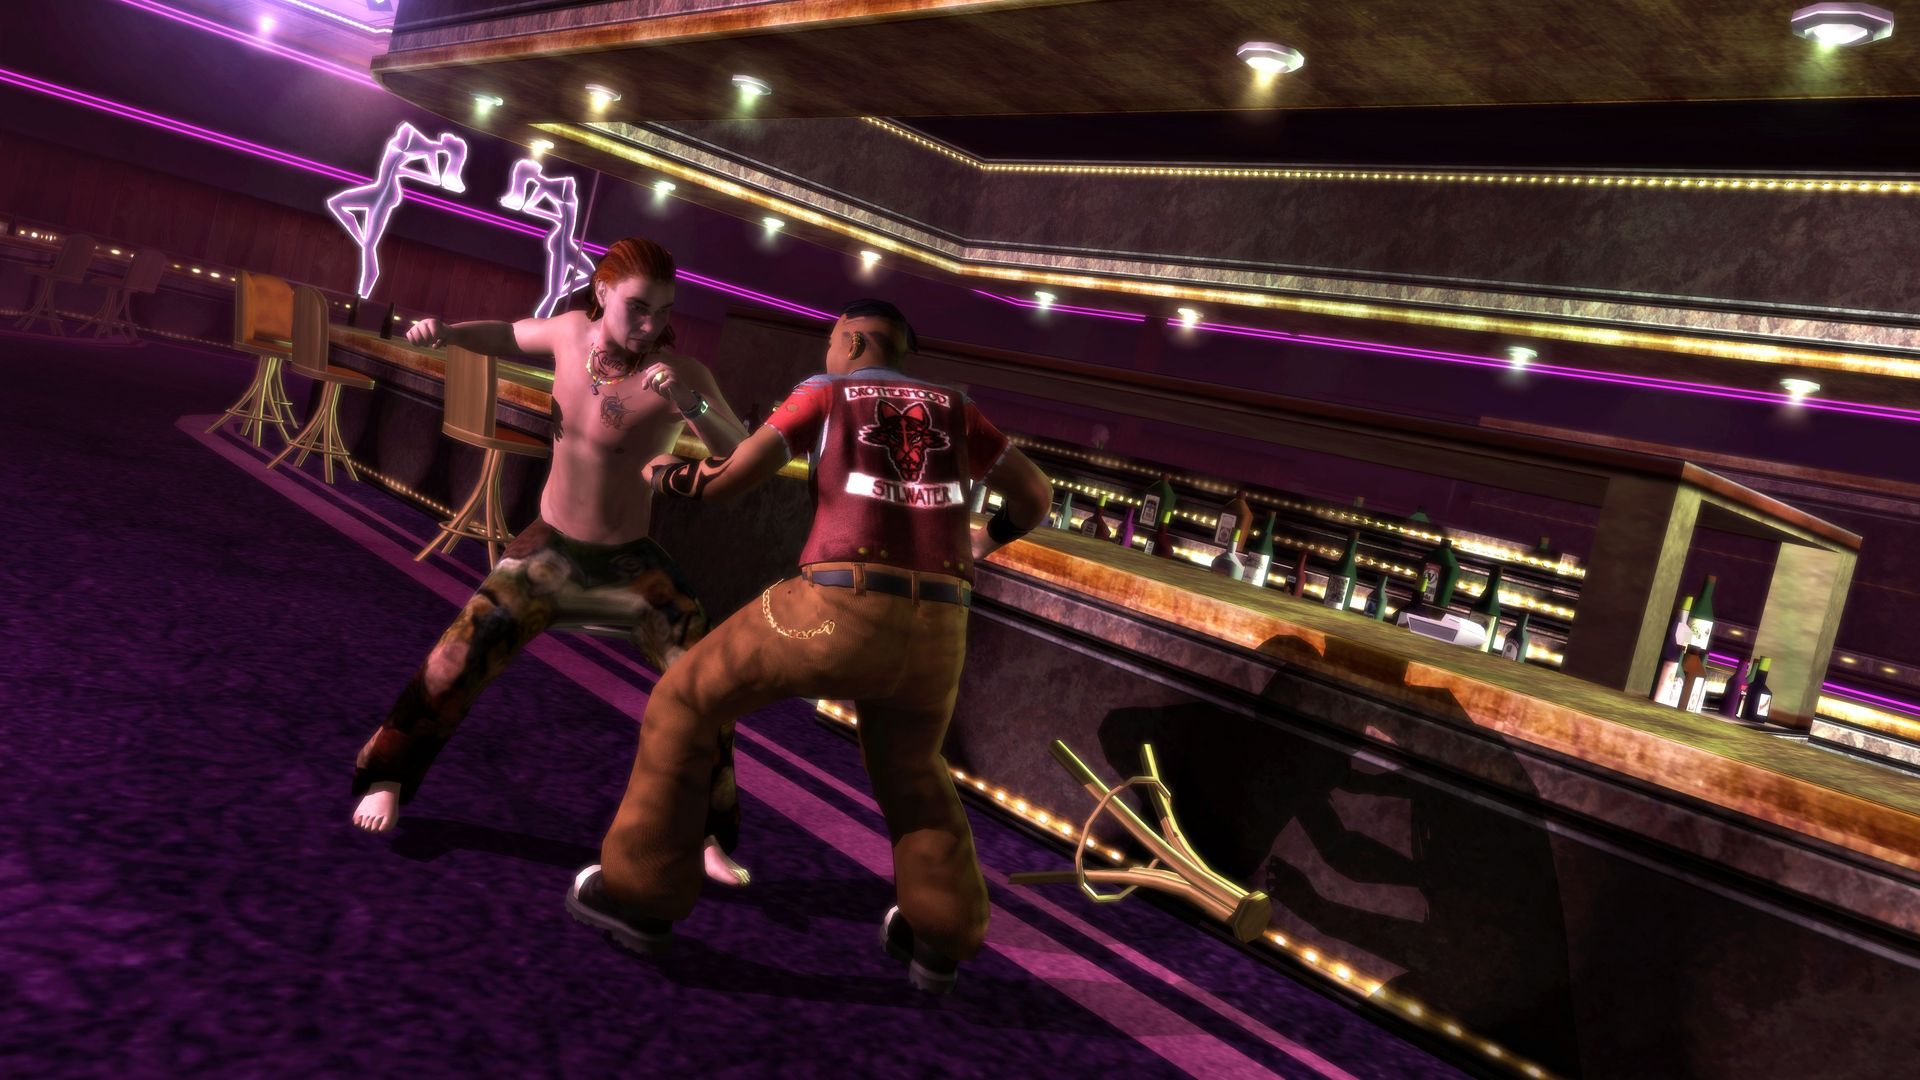 Tiết kiệm đến 75% khi mua Saints Row 2 trên Steam | Hình 3